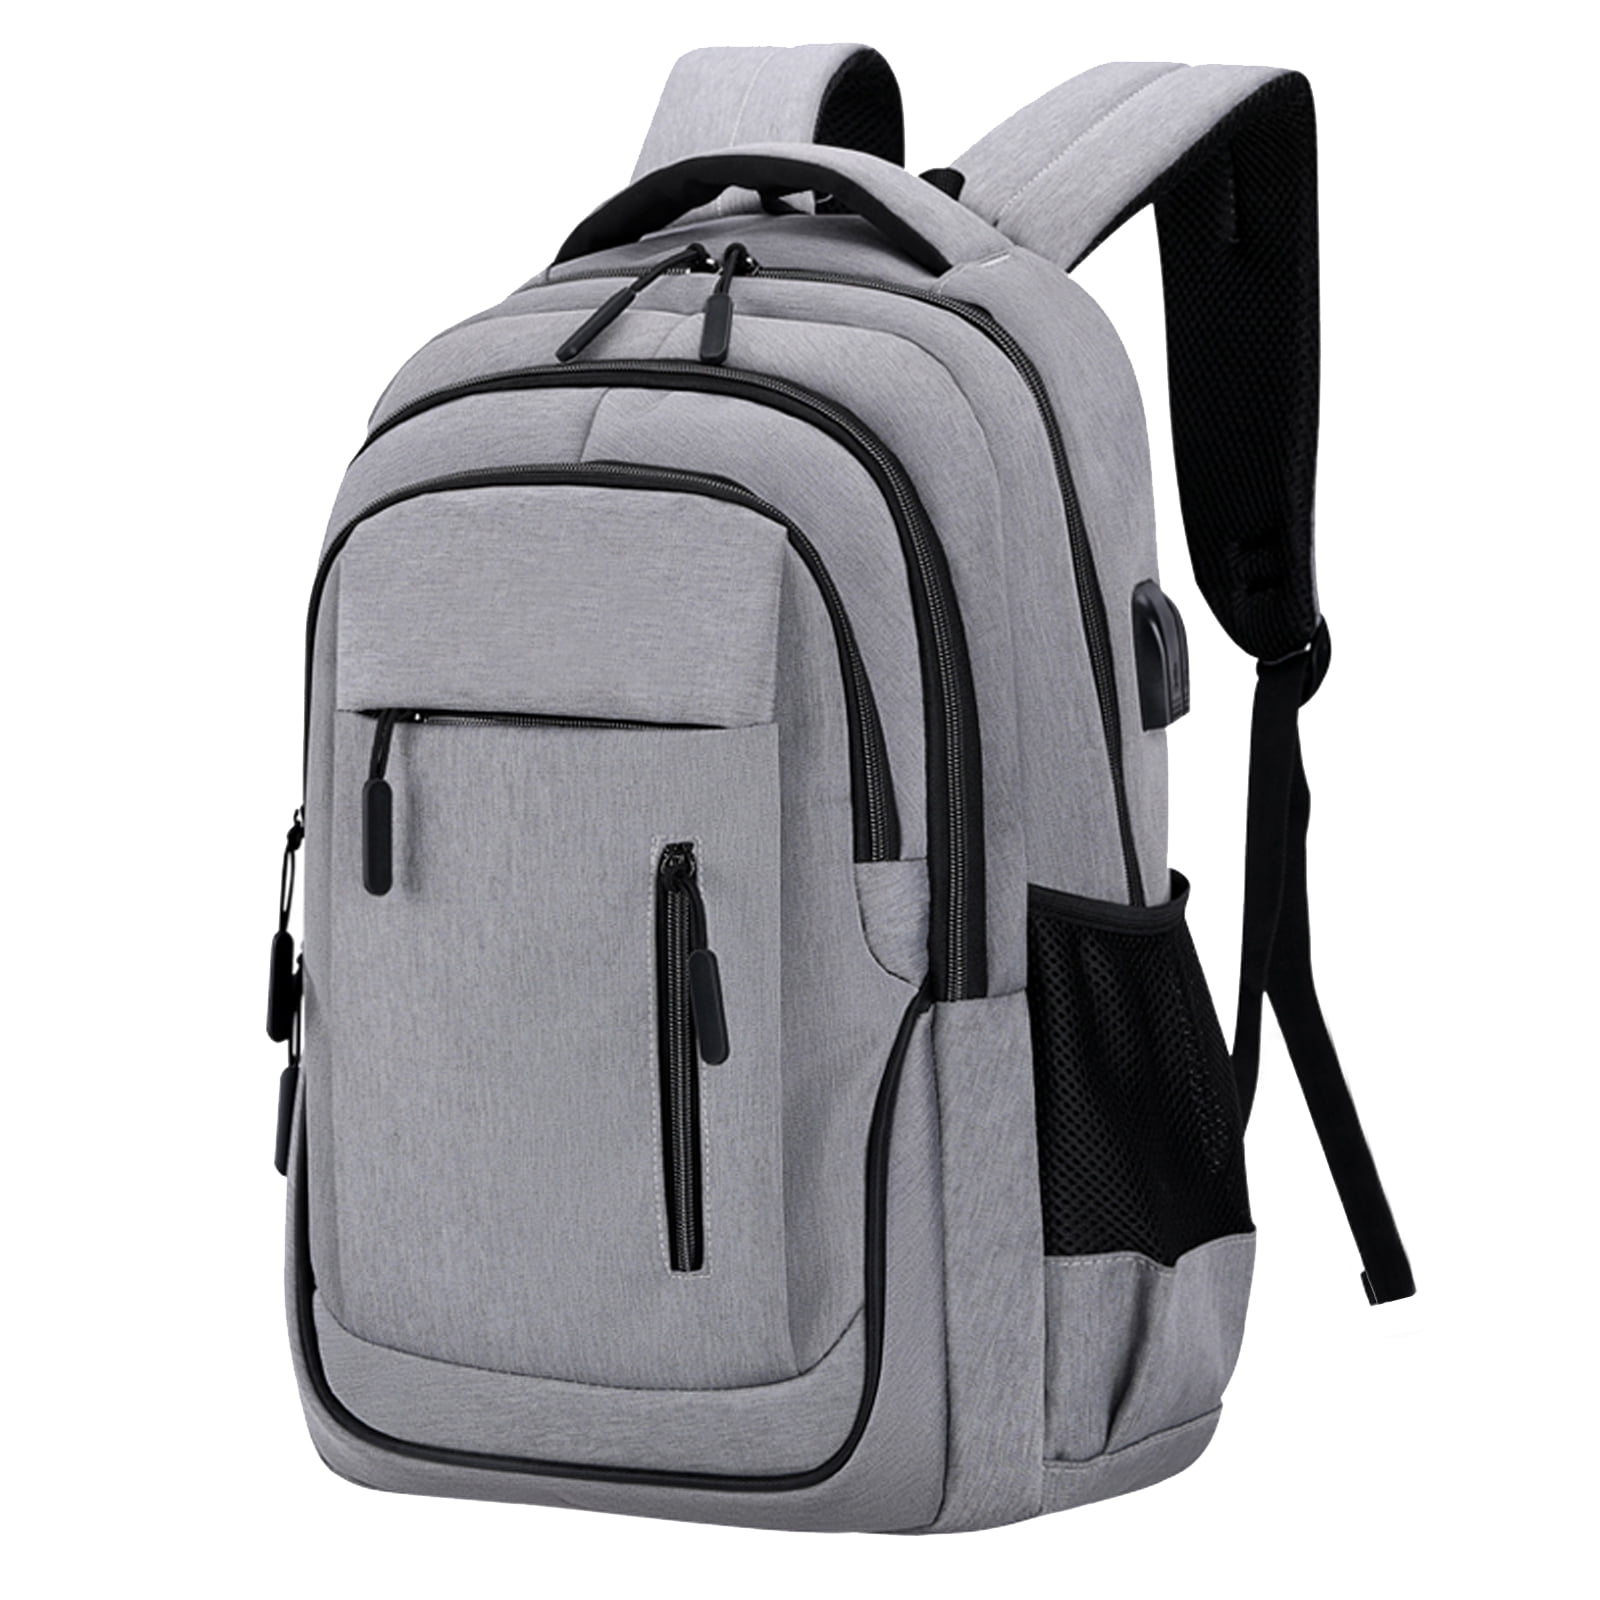 PYIP Backpack student bag computer bag travel backpack 40cm*25cm*13cm 